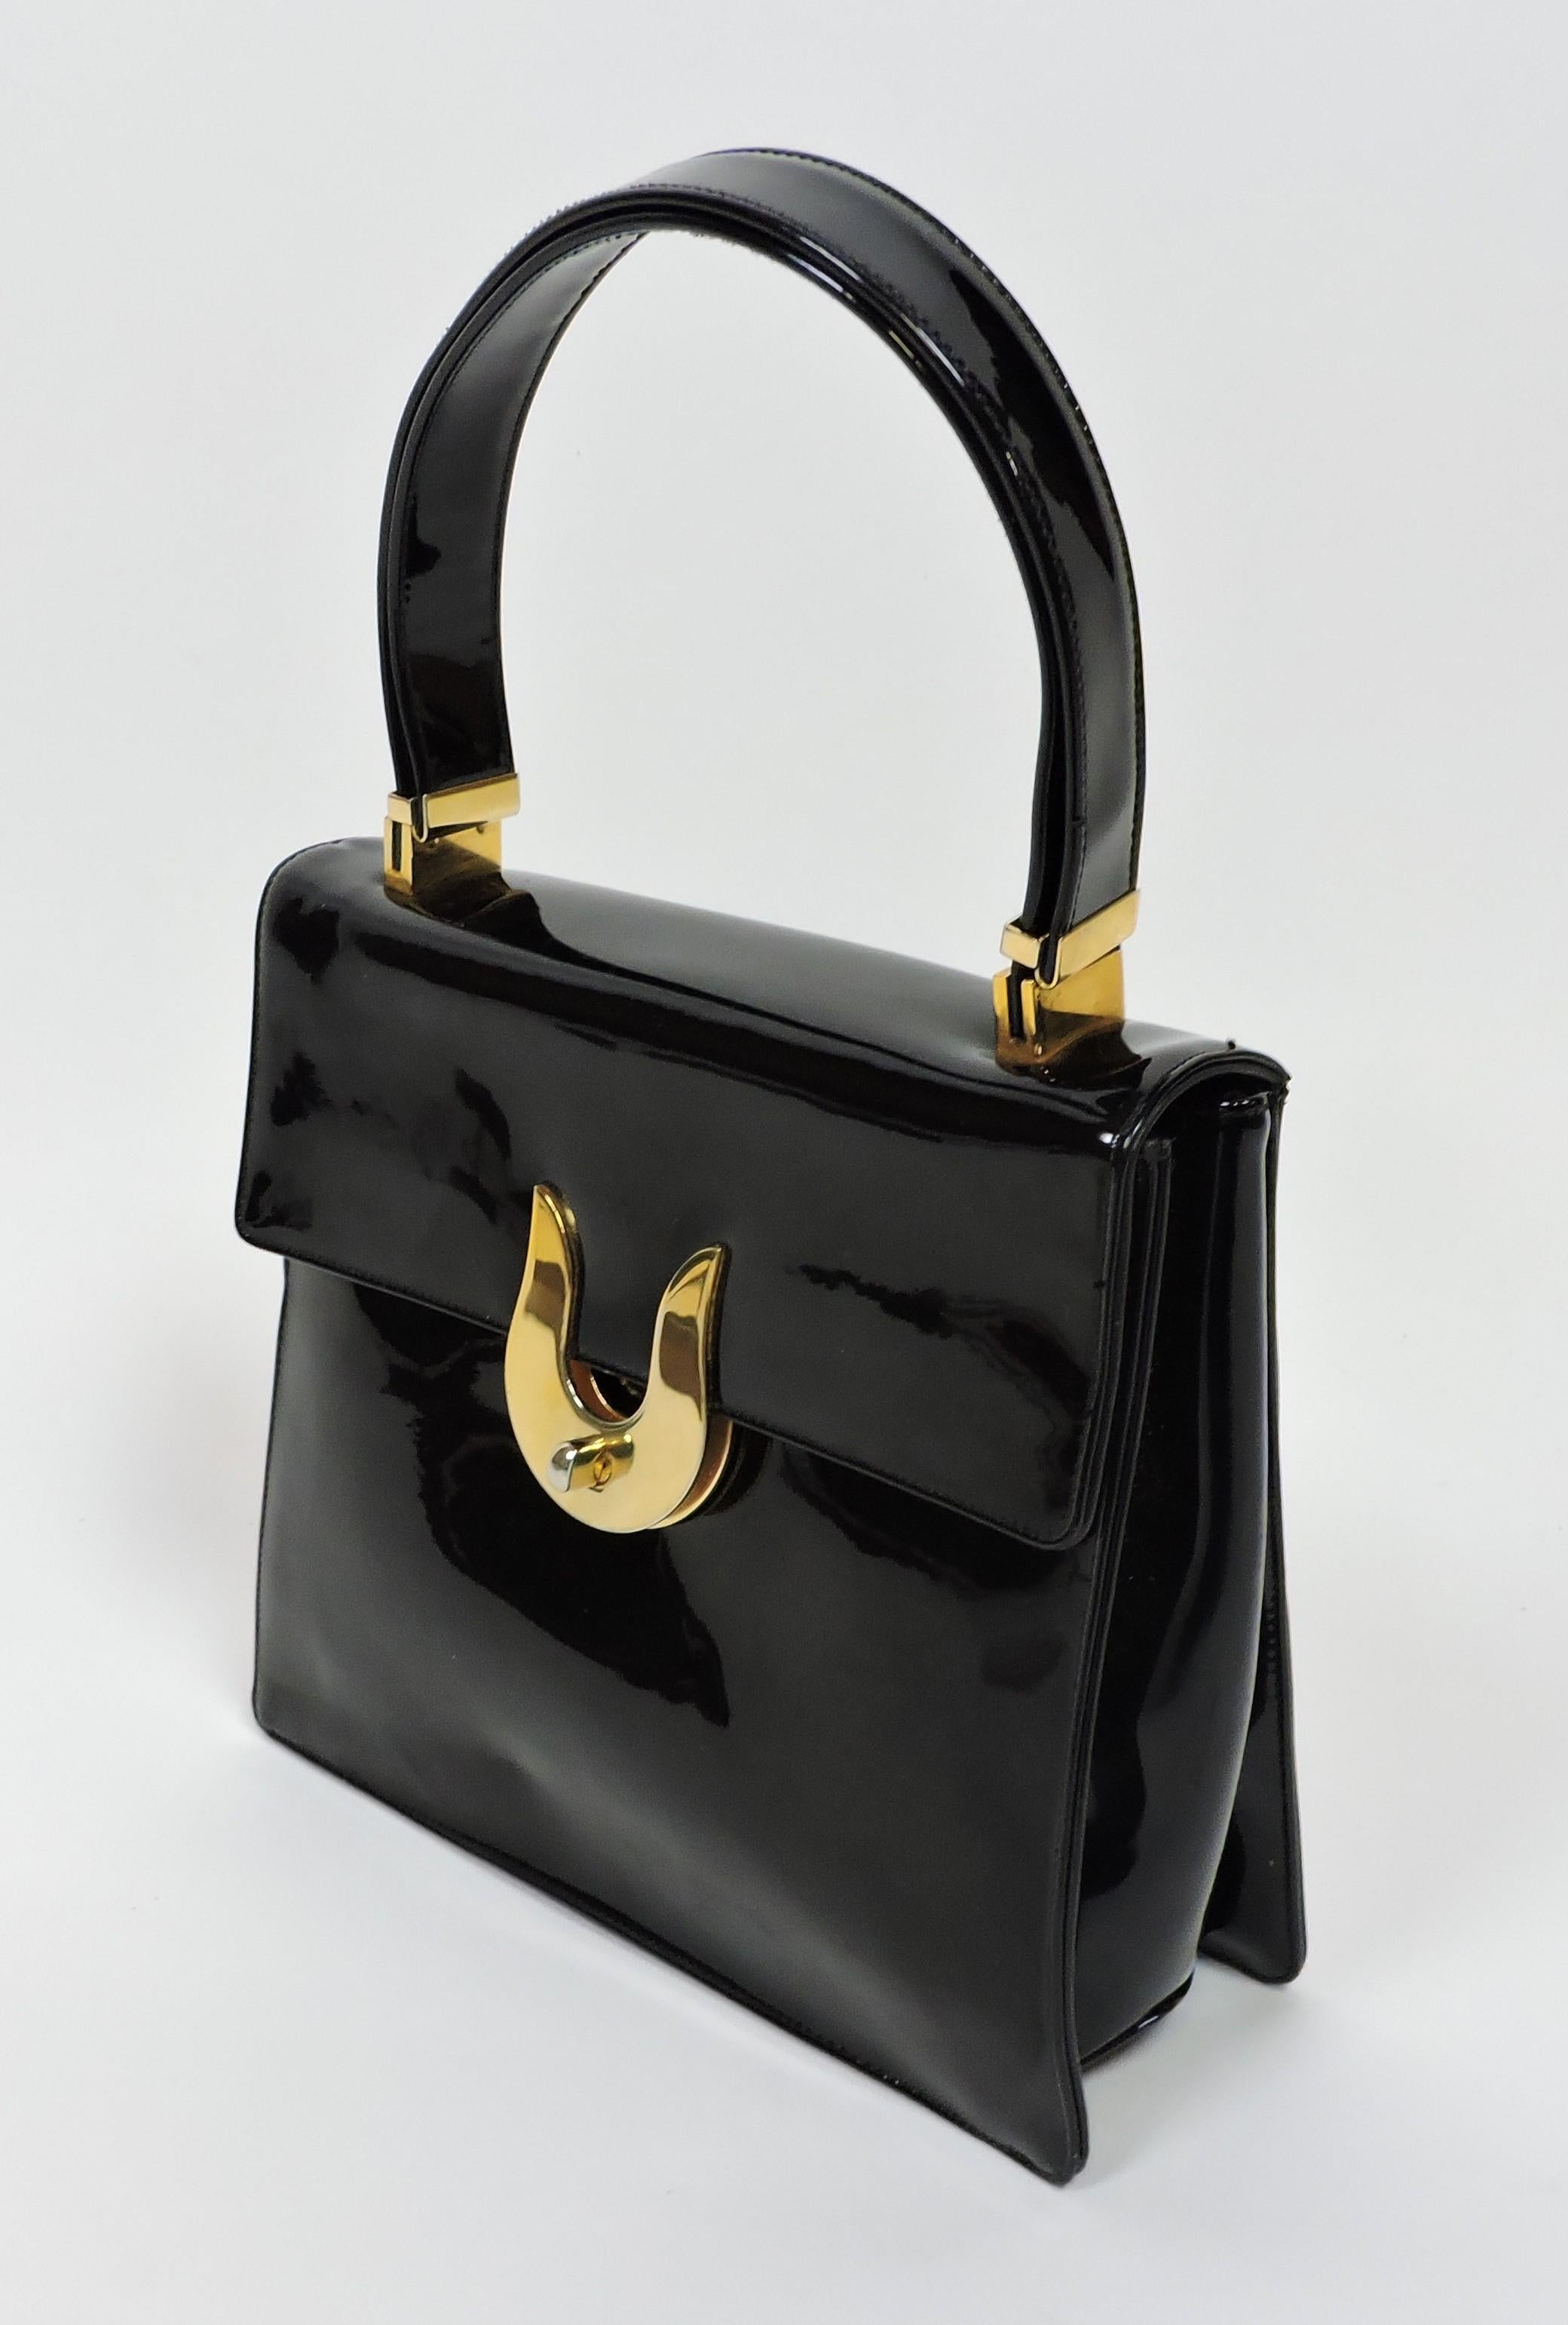 Koret Mid-Century Modern Black Patent Leather and Brass Handbag or Shoulder Bag For Sale 3